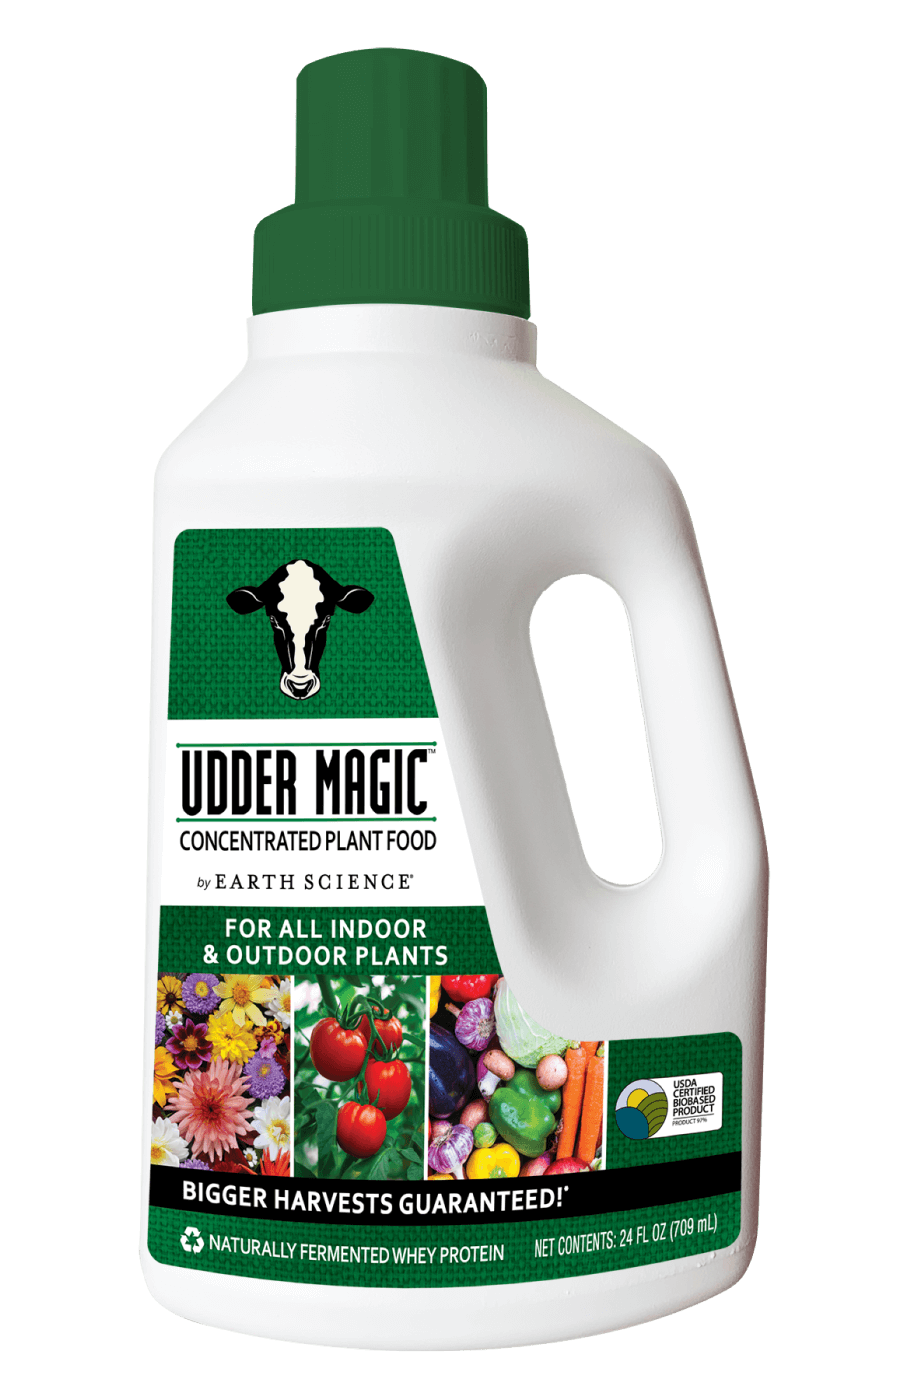 Bottle of Udder Magic plant food